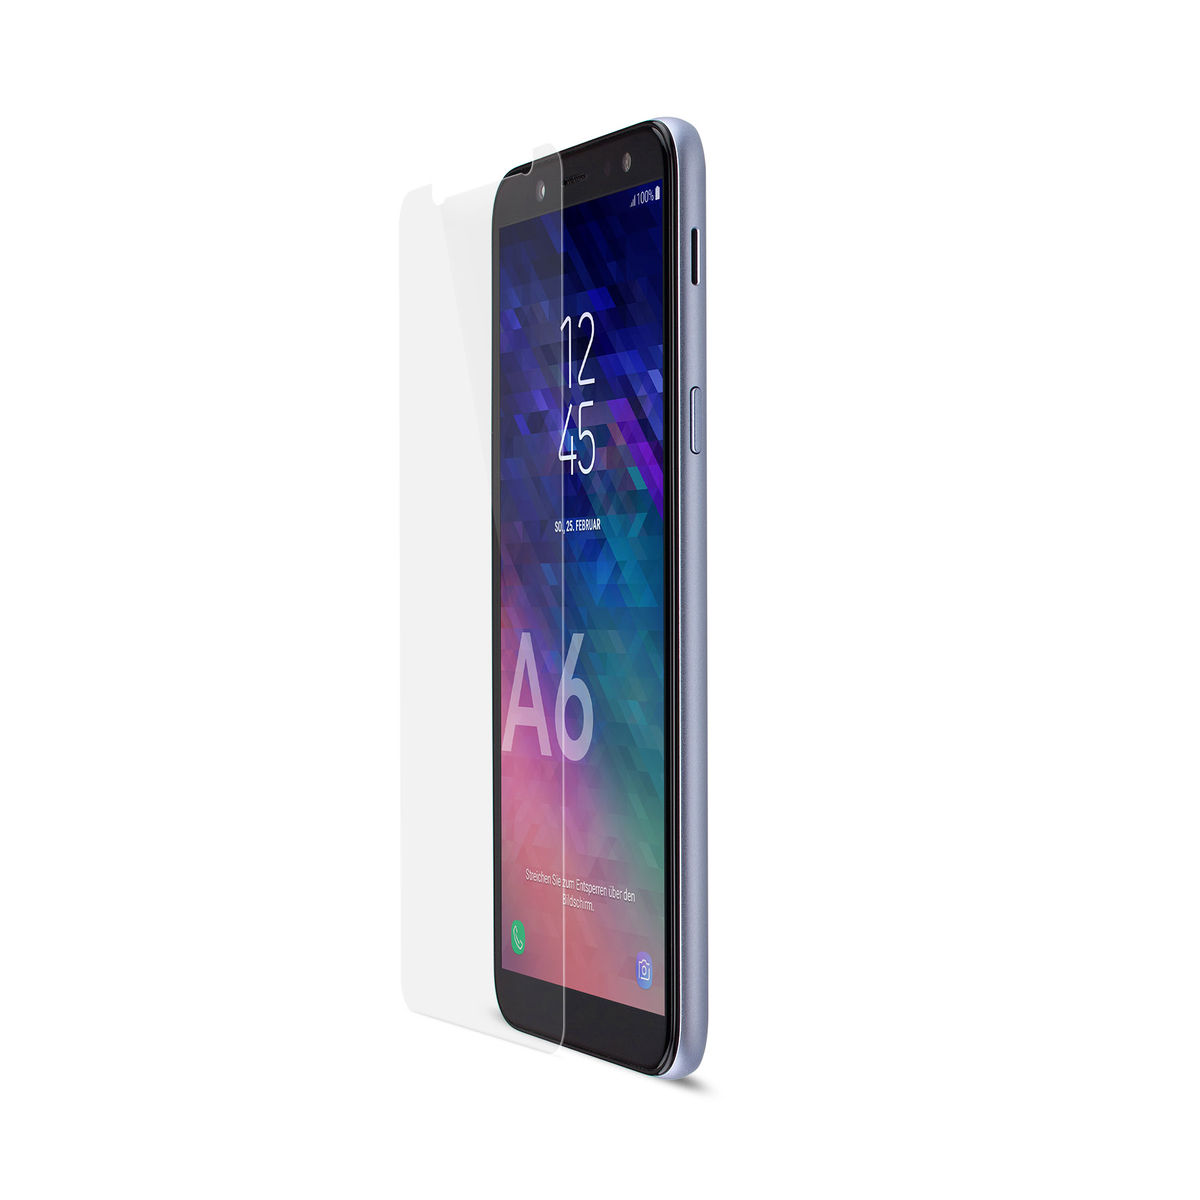 ARTWIZZ SecondDisplay Displayschutz(für Samsung Galaxy A6 (2018))